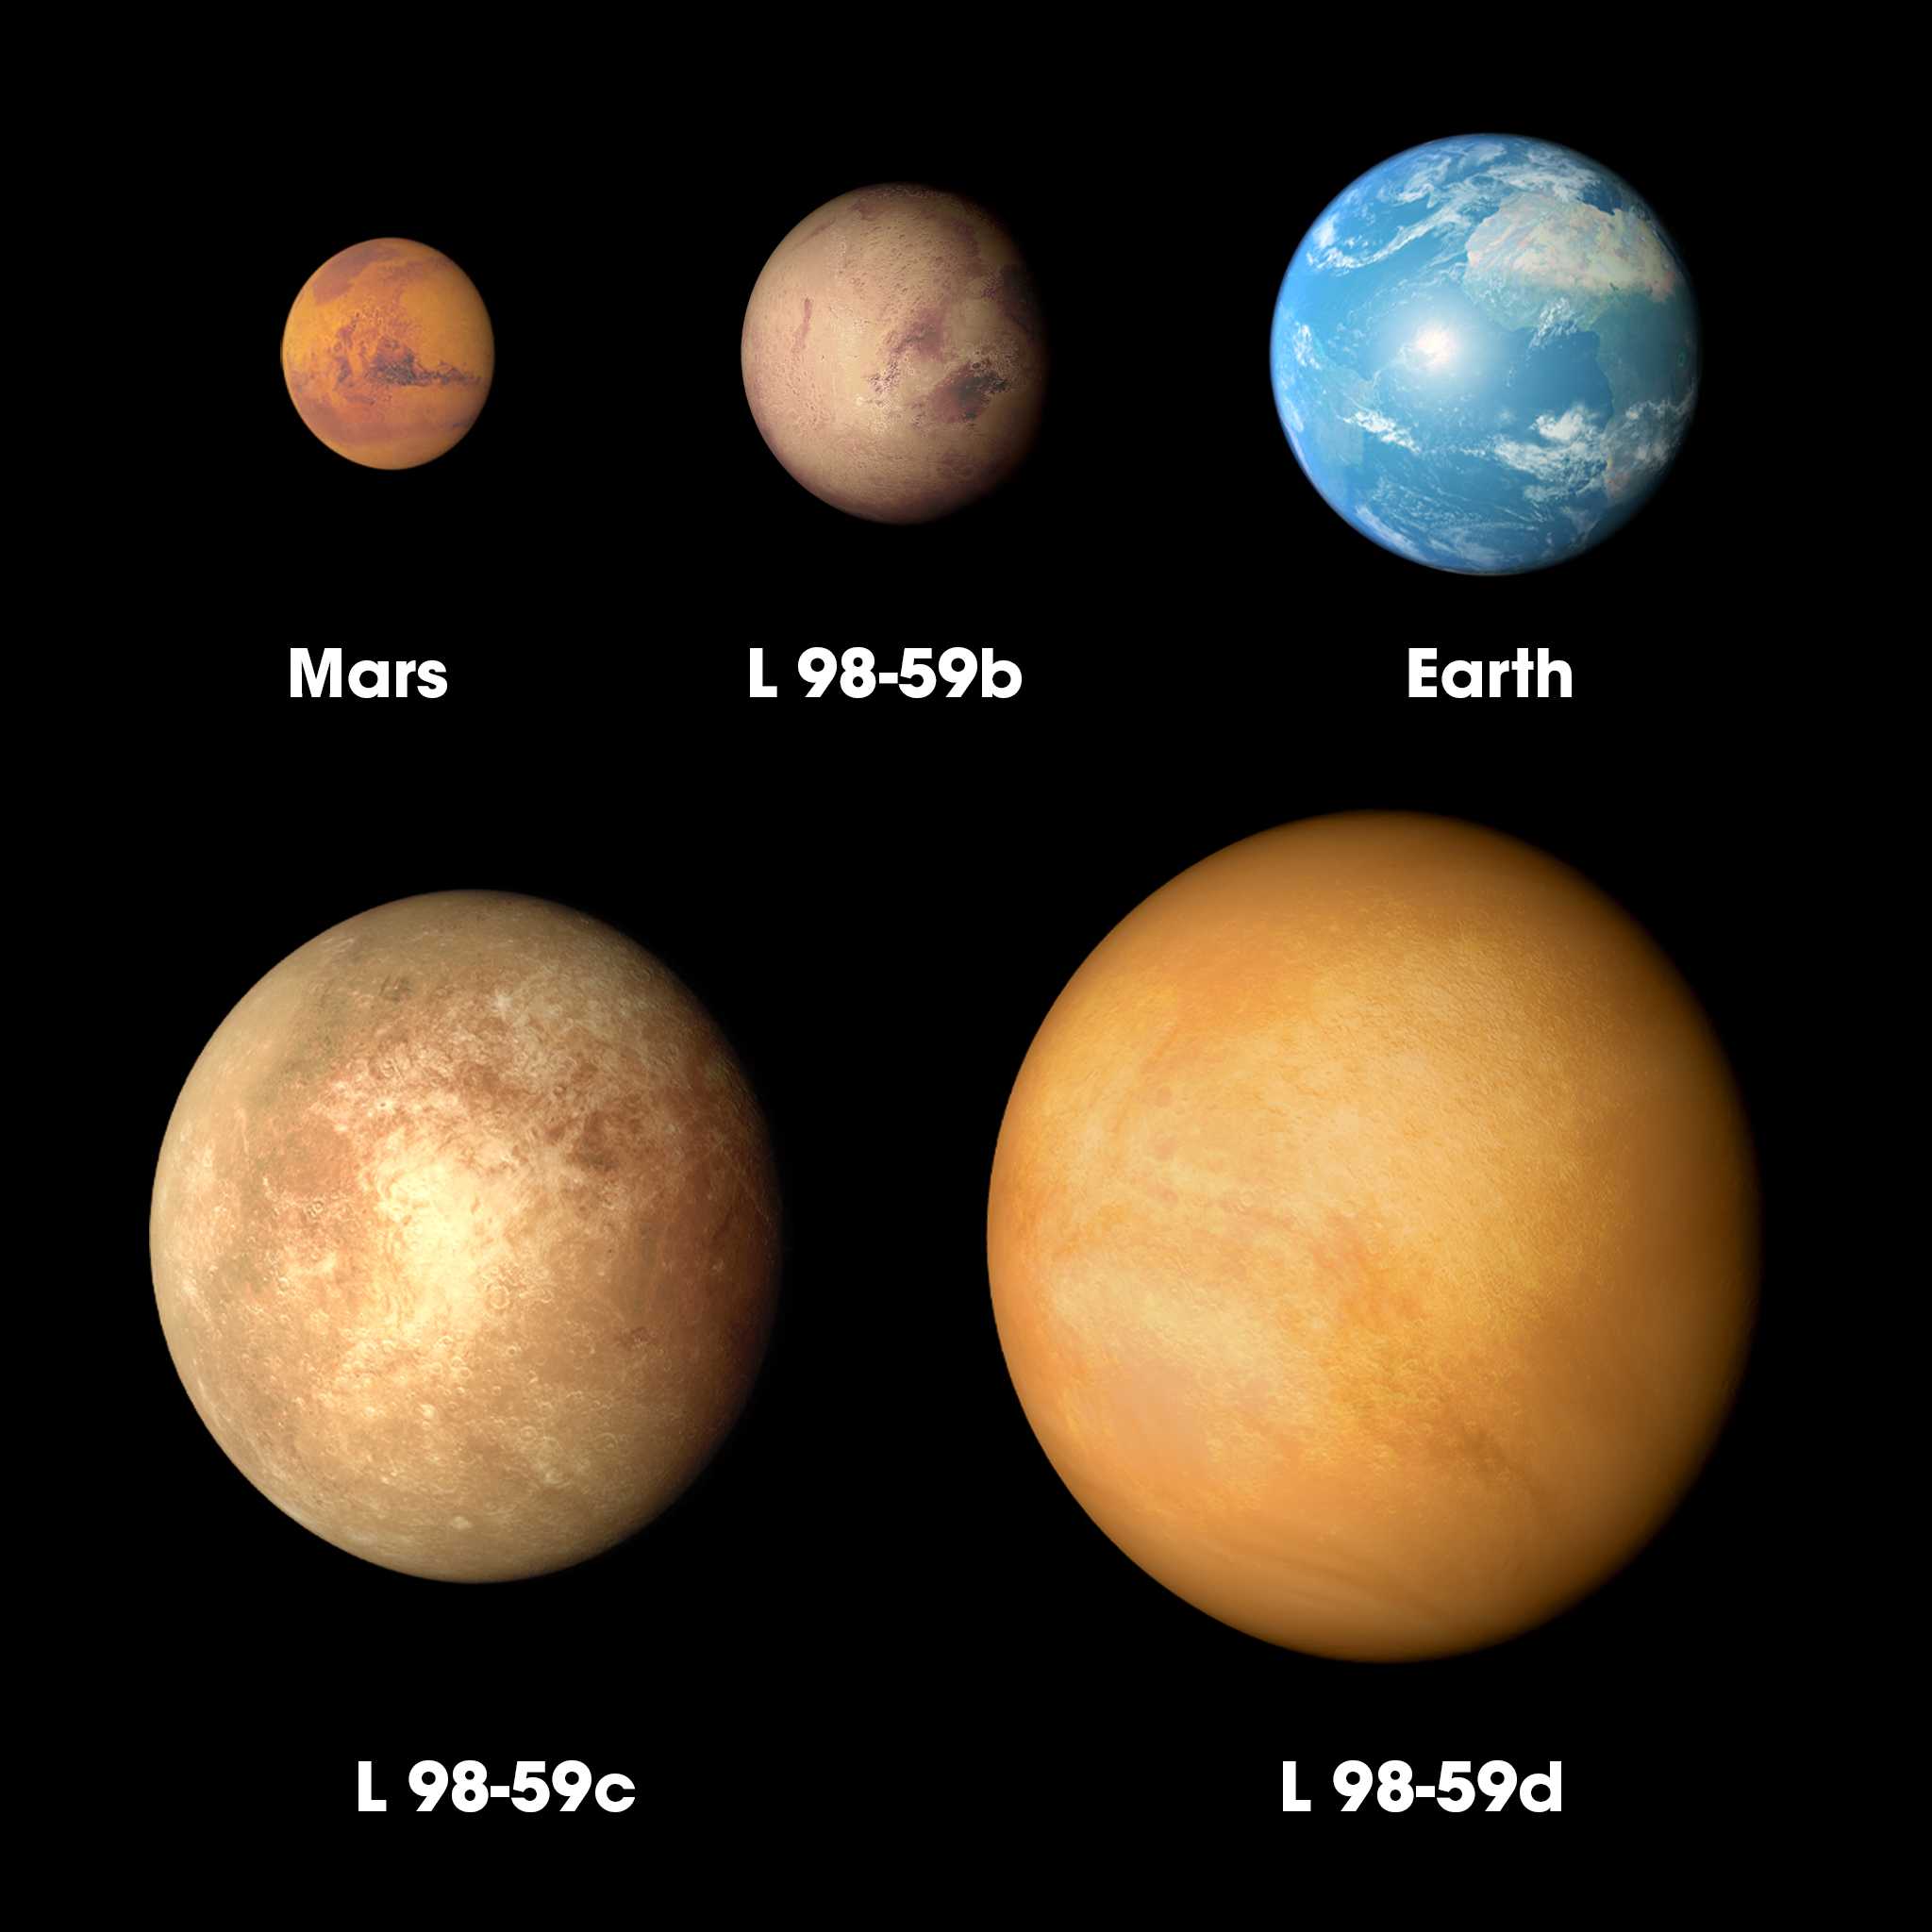 Hình ảnh so sánh 3 hành tinh mới phát hiện với sao Hỏa (Mars) và Trái đất (Earth) 